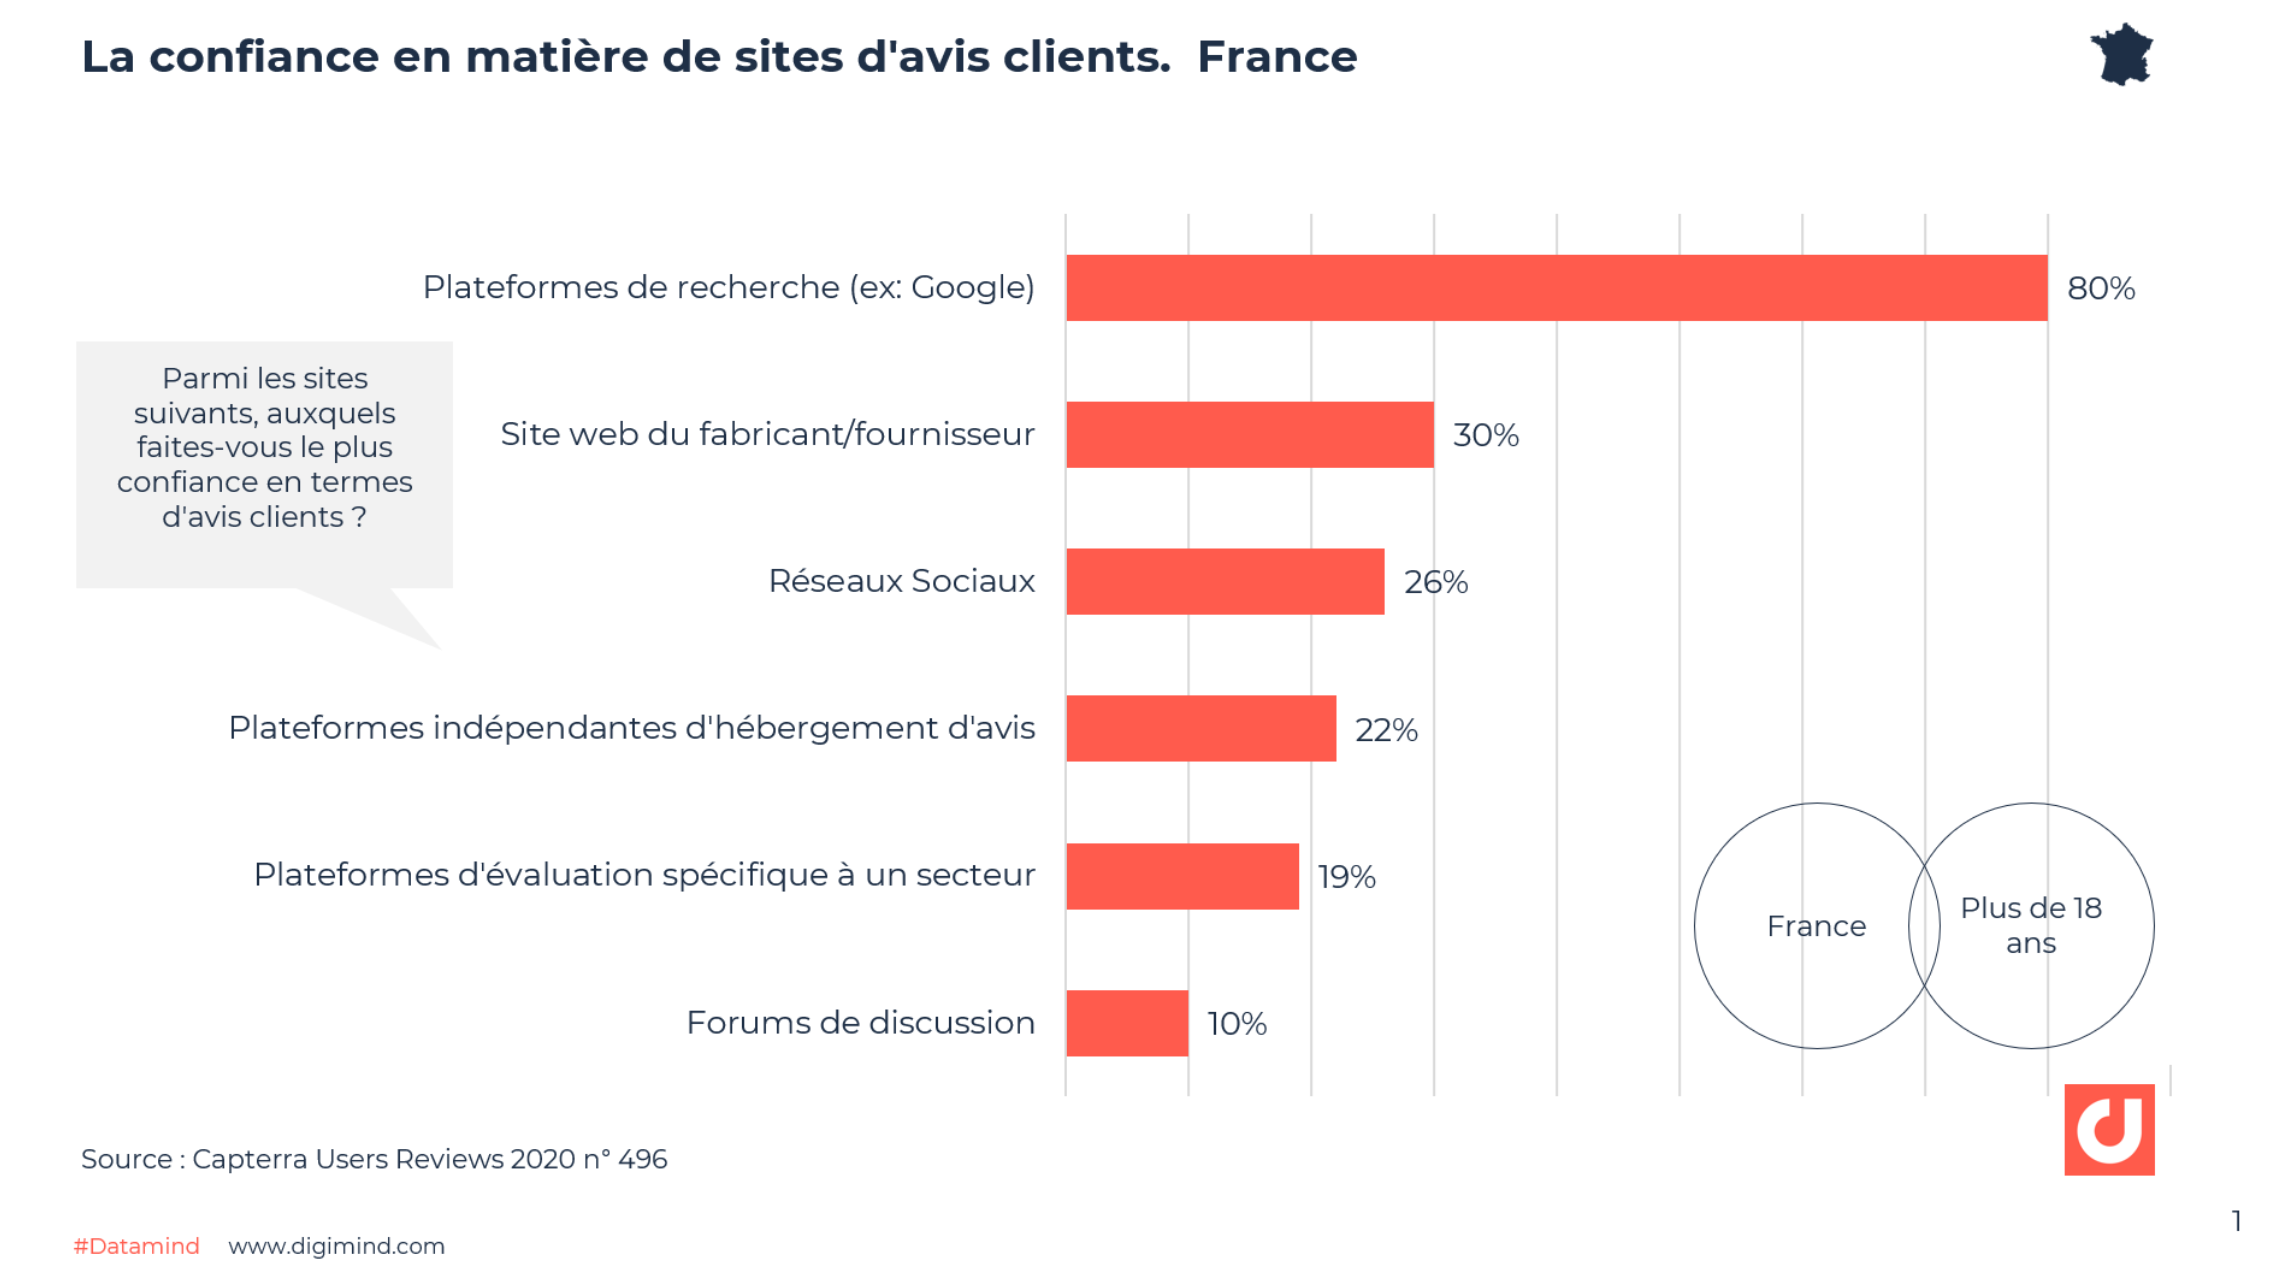 La confiance en matière de sites d'avis clients. France - Source : Capterra